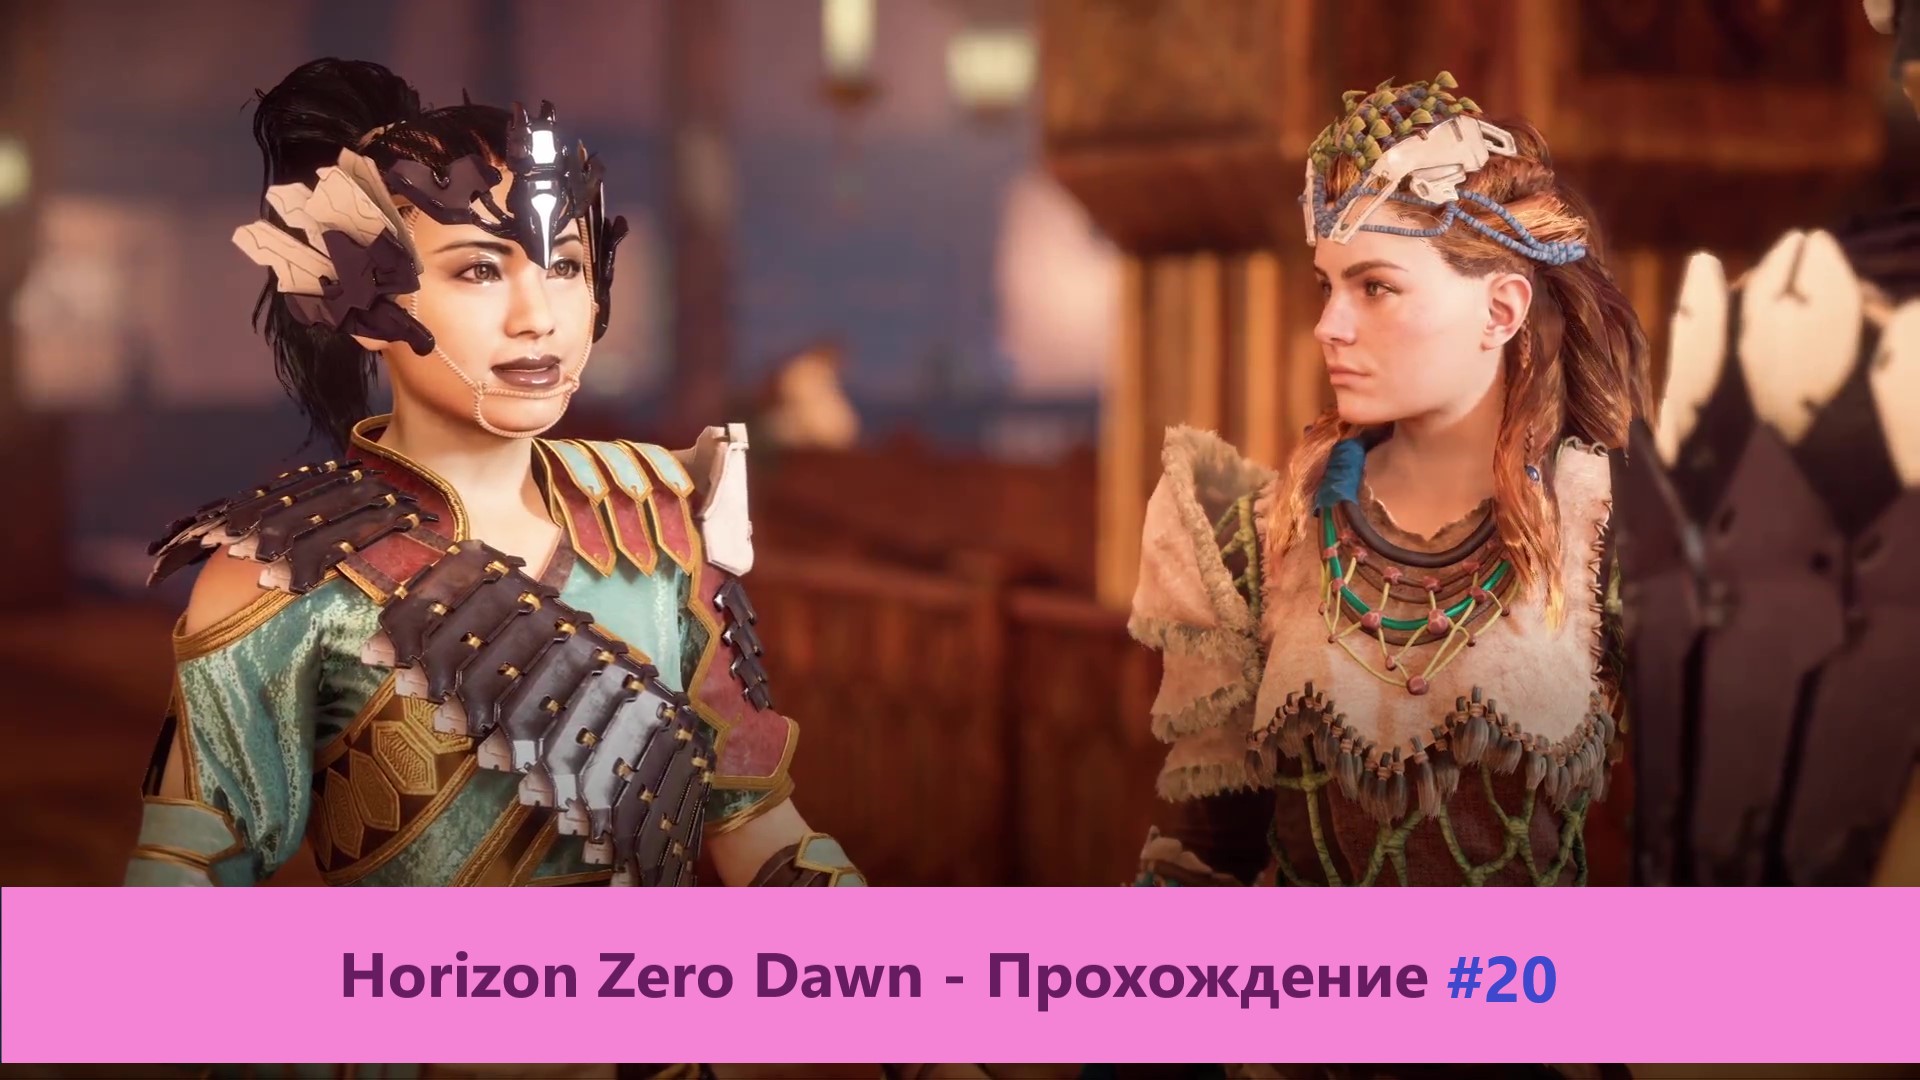 Horizon Zero Dawn - Прохождение #20